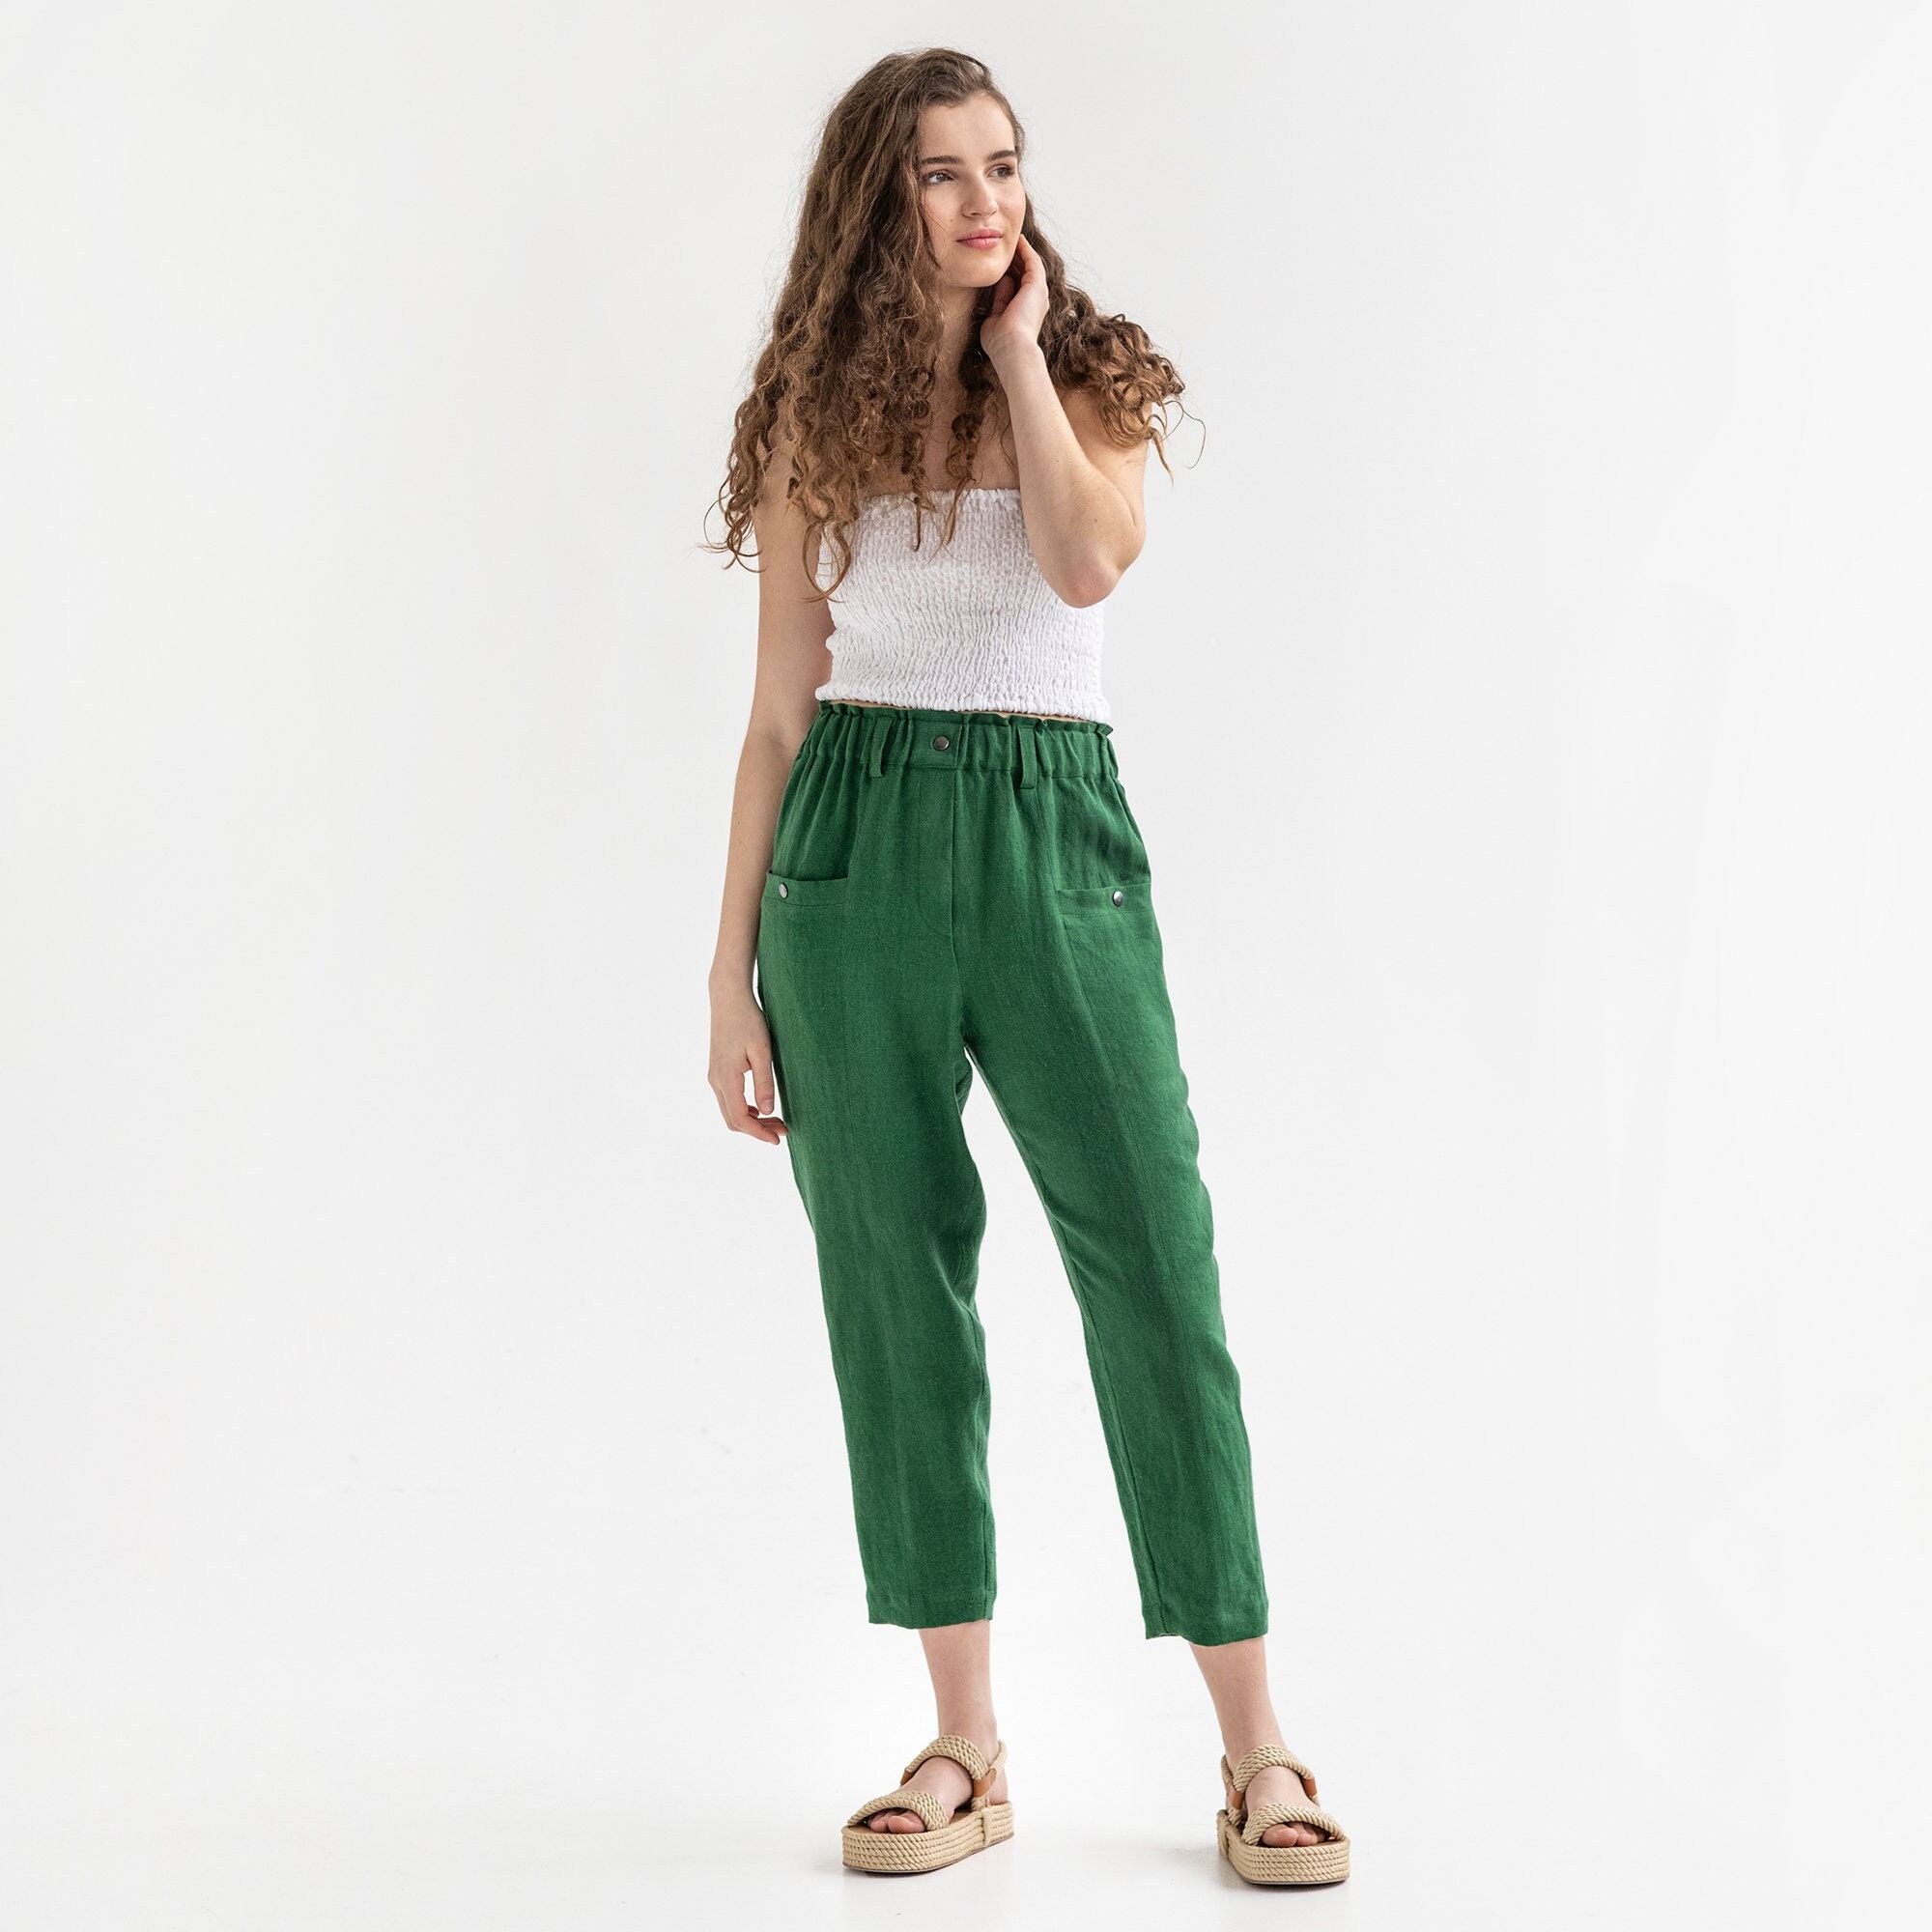 Buy Vasstram Striped Linen Pants  Beige for Women Online  Tata CLiQ Luxury